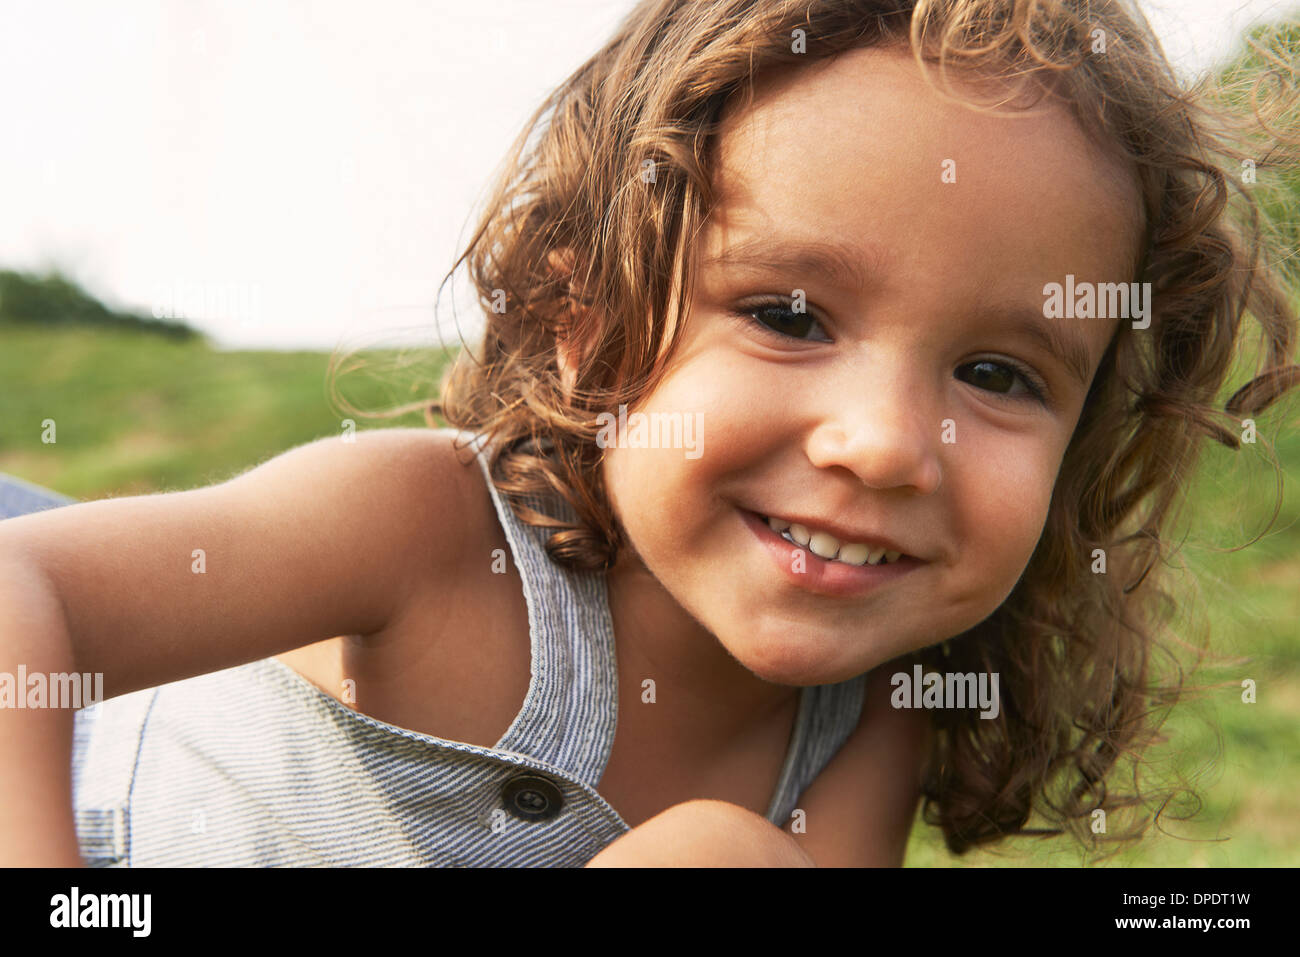 Ritratto di giovane ragazzo con capelli castani, sorridente Foto Stock